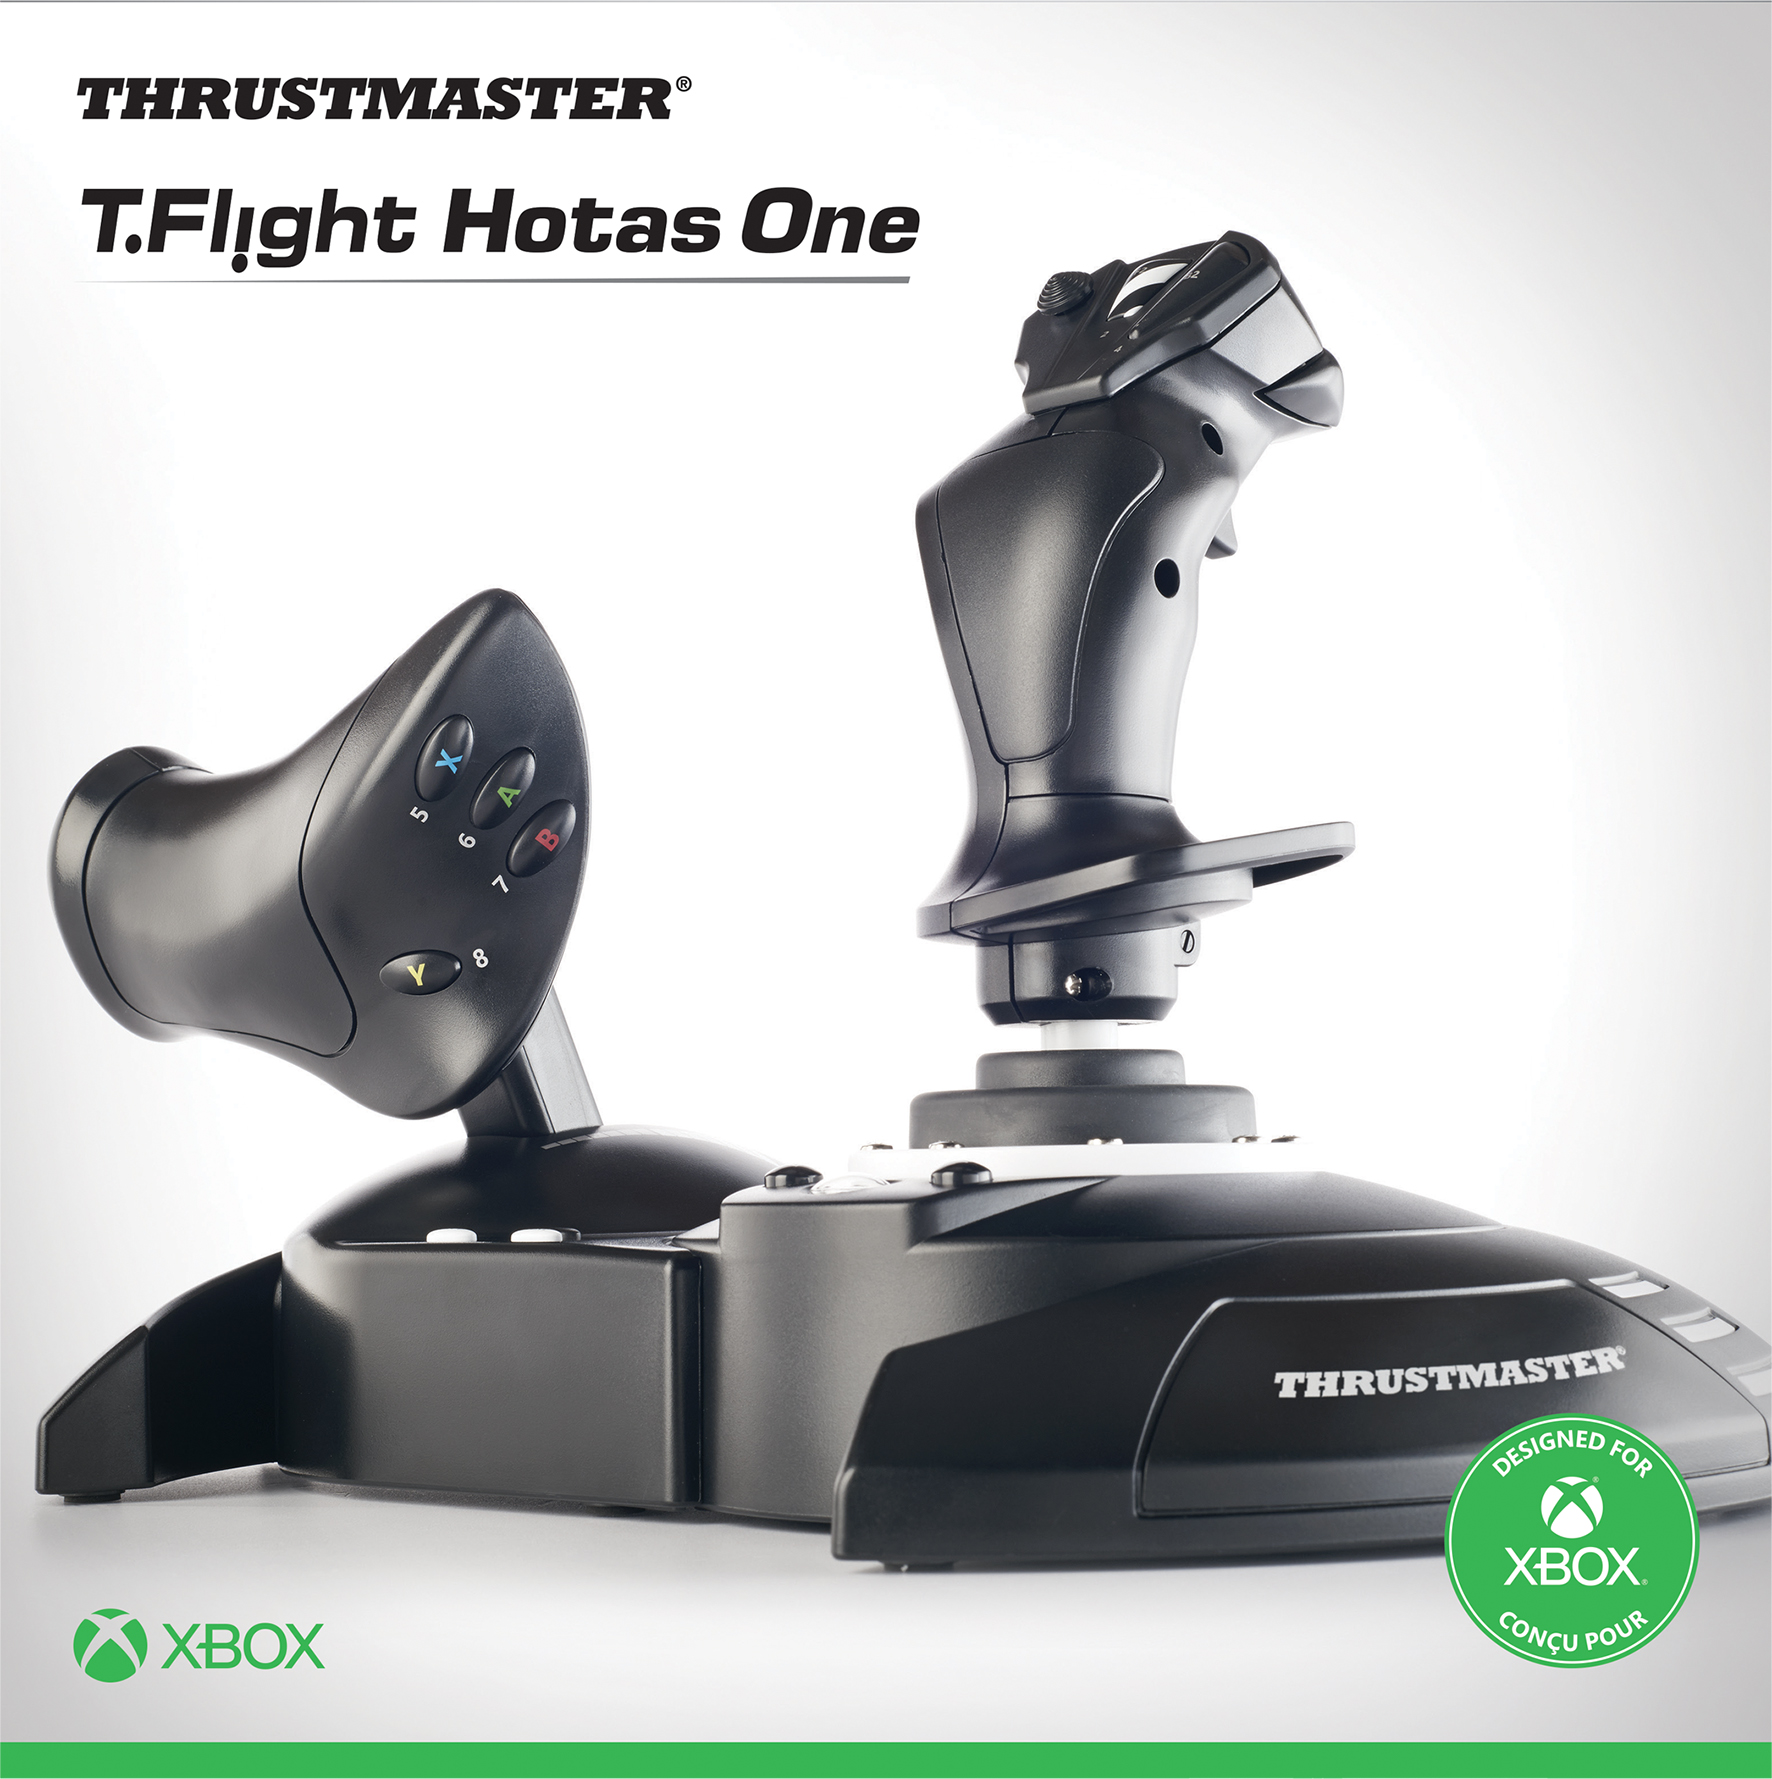 Atenção passageiros do Xbox Series, confiram joysticks para o Flight  Simulator